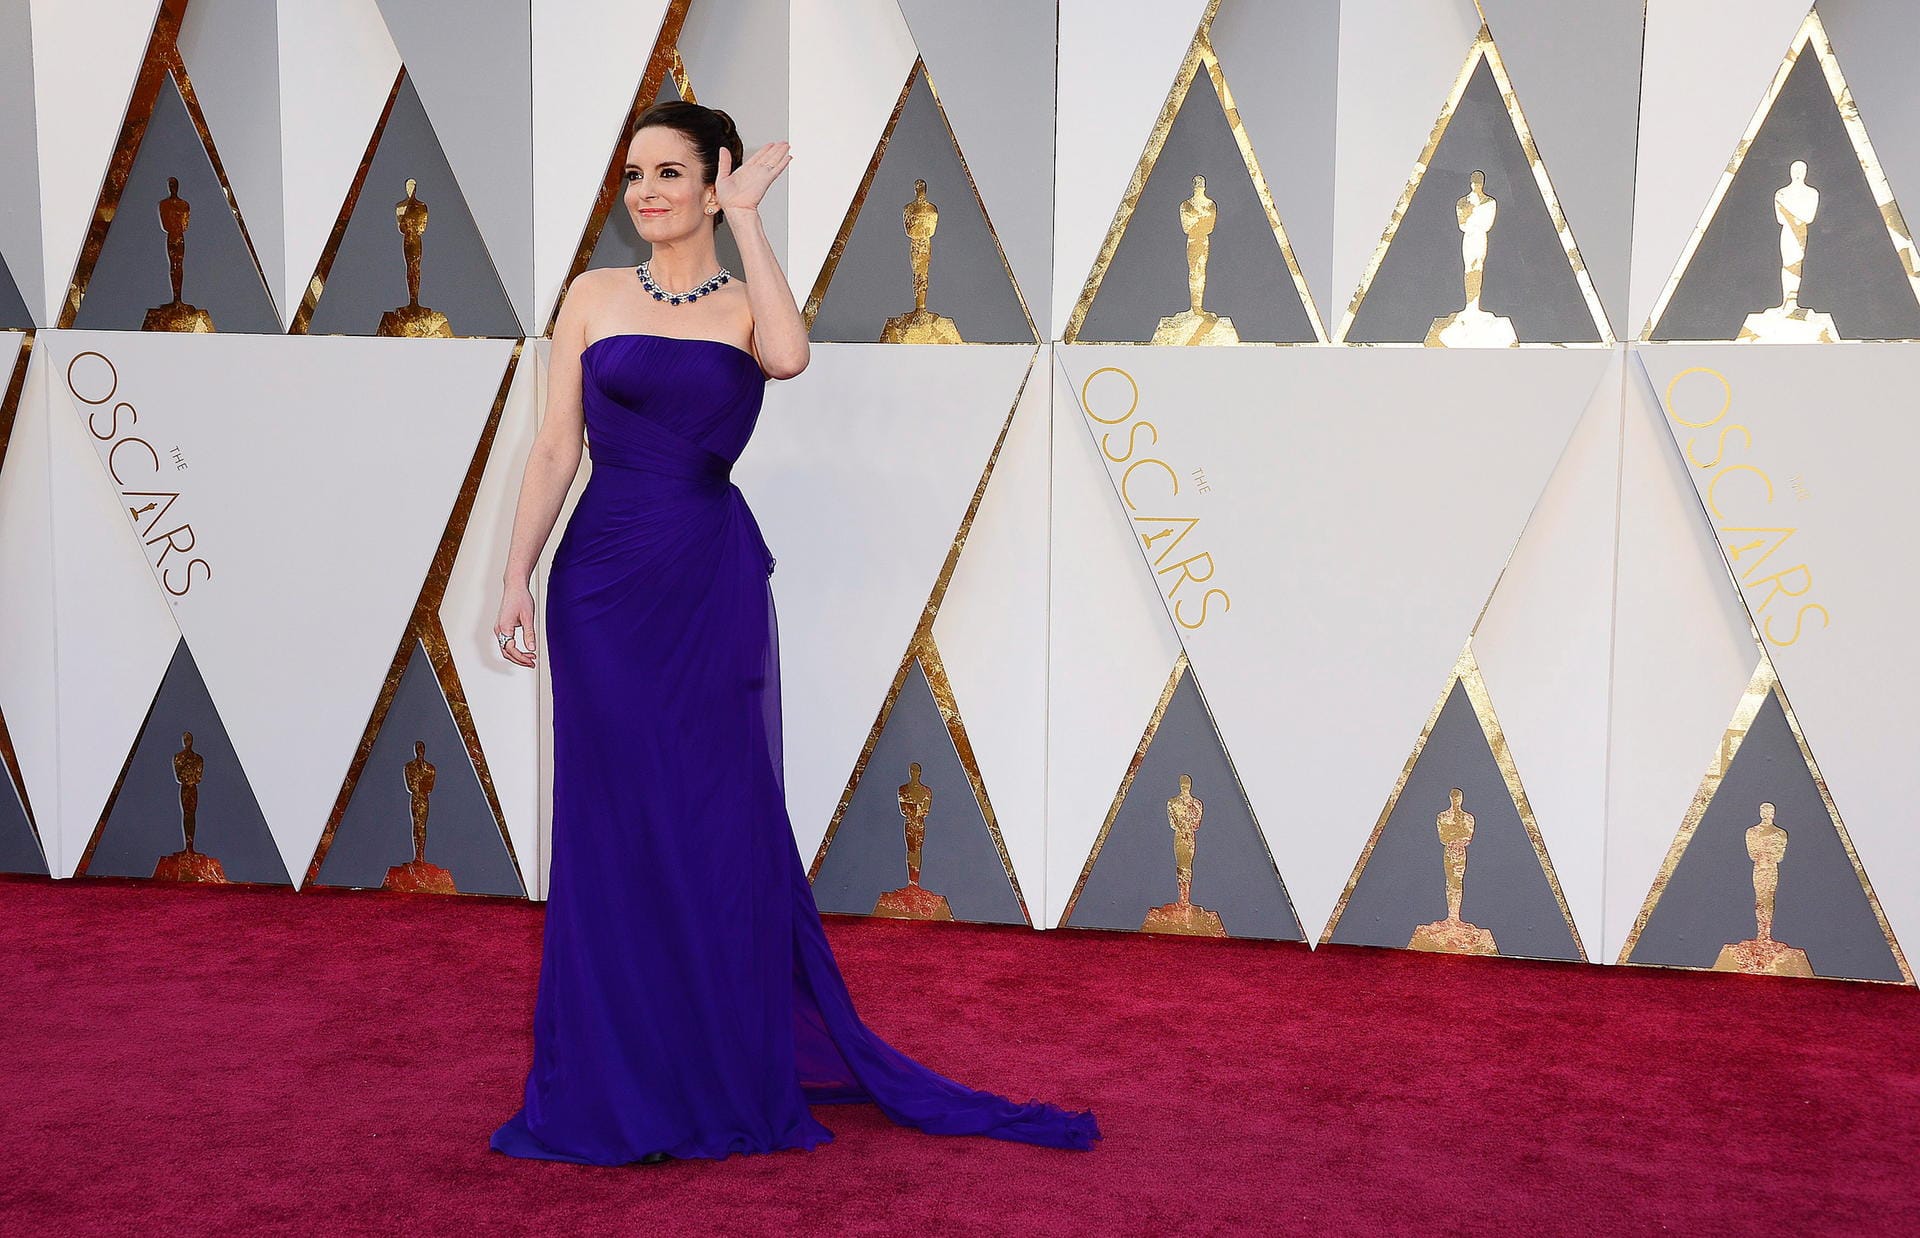 Tina Fey strahlte in ihrer Atelier-Versace-Robe schlichte Eleganz aus - perfekt für die Oscars.